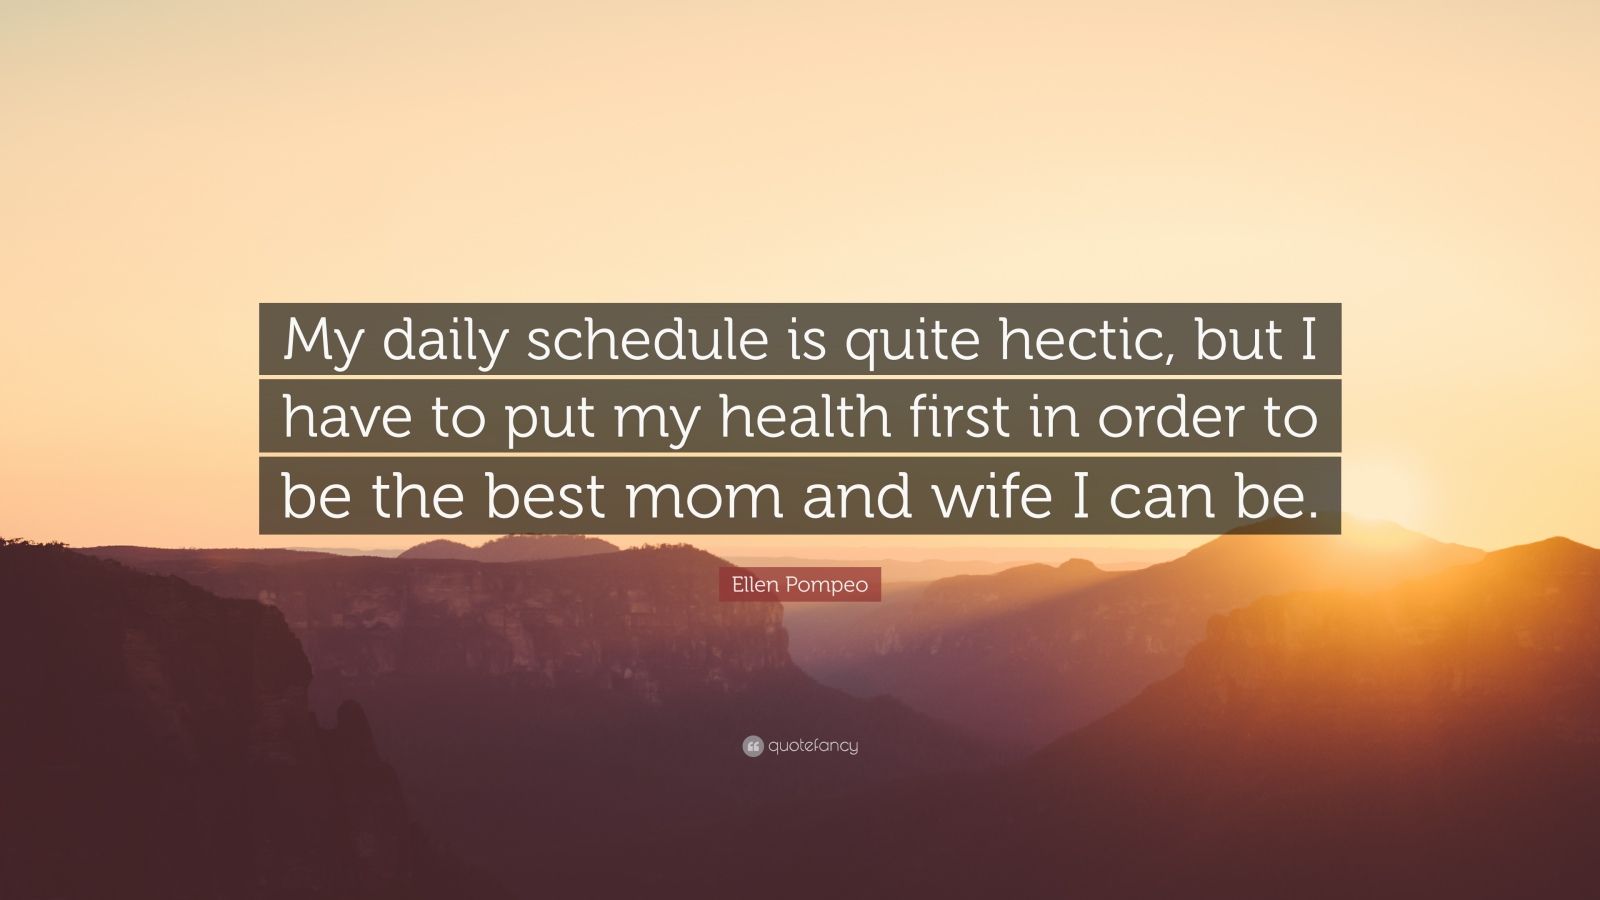 Ellen Pompeo Quote: "My daily schedule is quite hectic ...